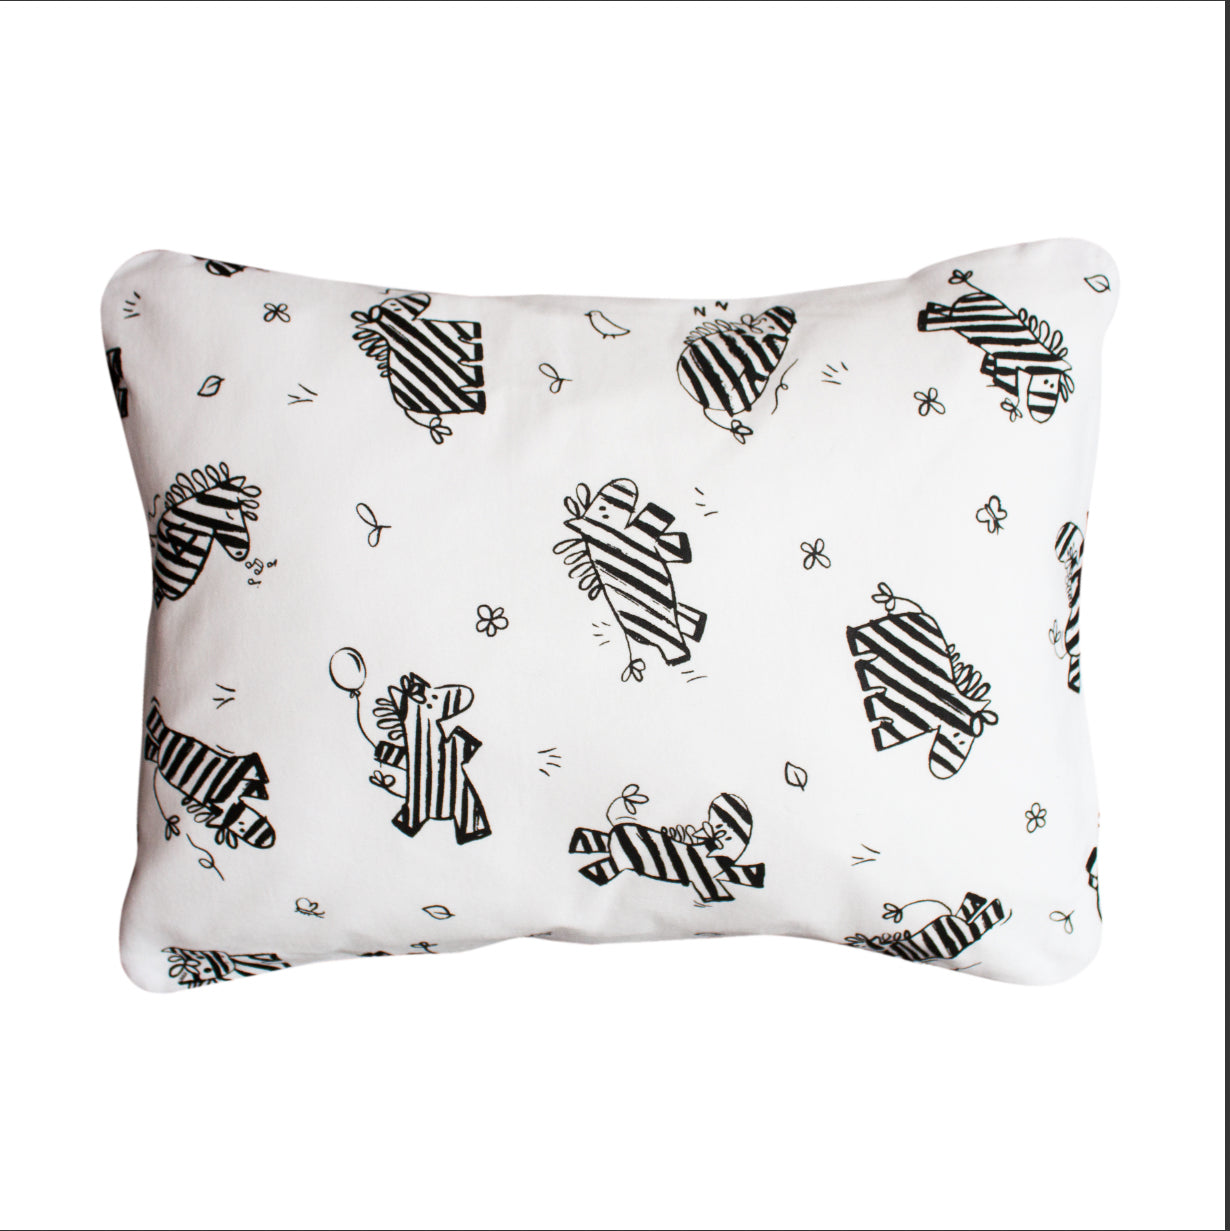 Duvet Cover and Pillowcase - Zebra